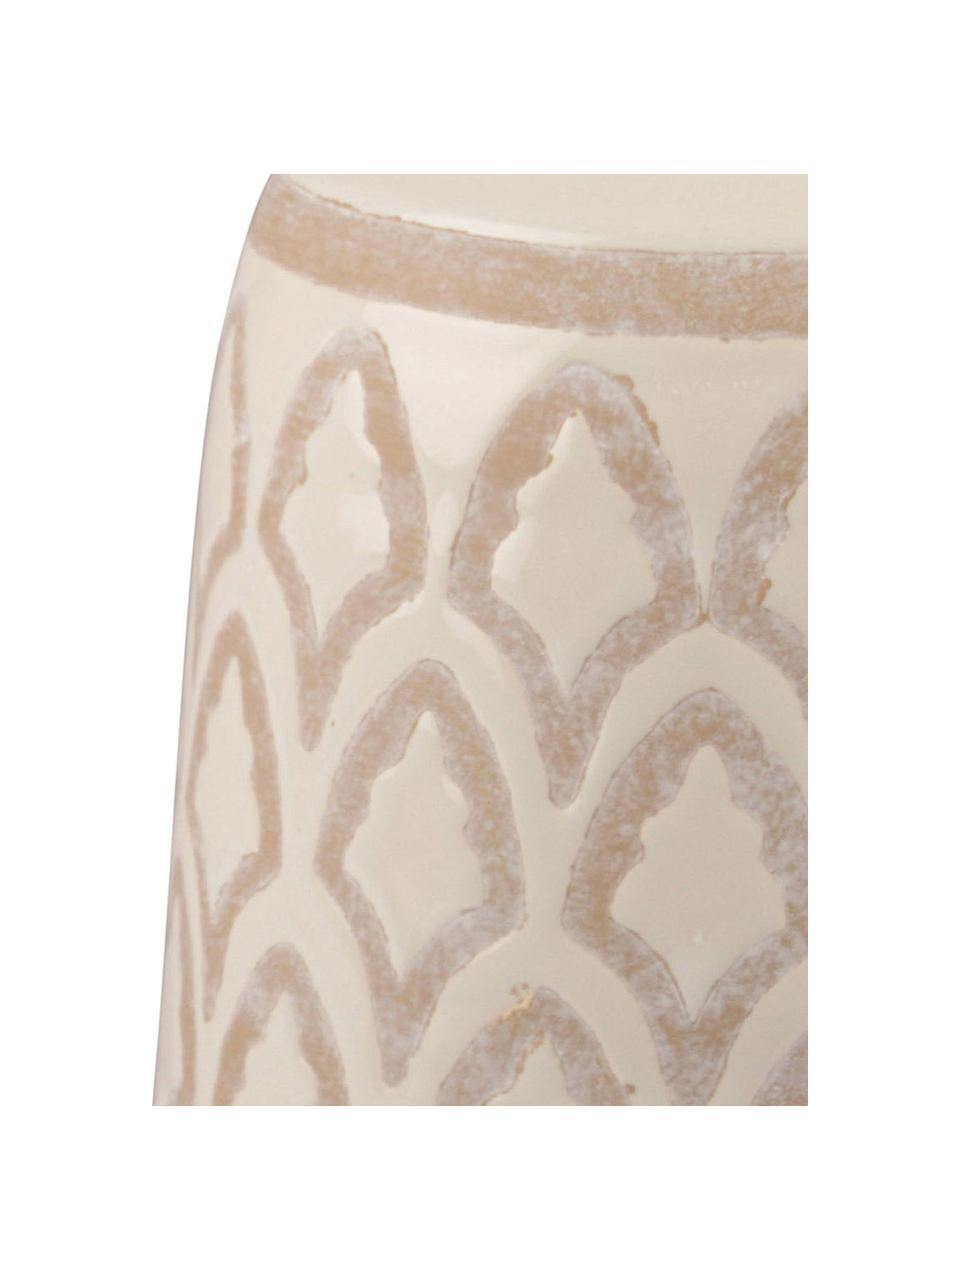 Jarrón de cerámica Rustica, Cerámica, Crema, beige, Ø 14 x Al 22 cm